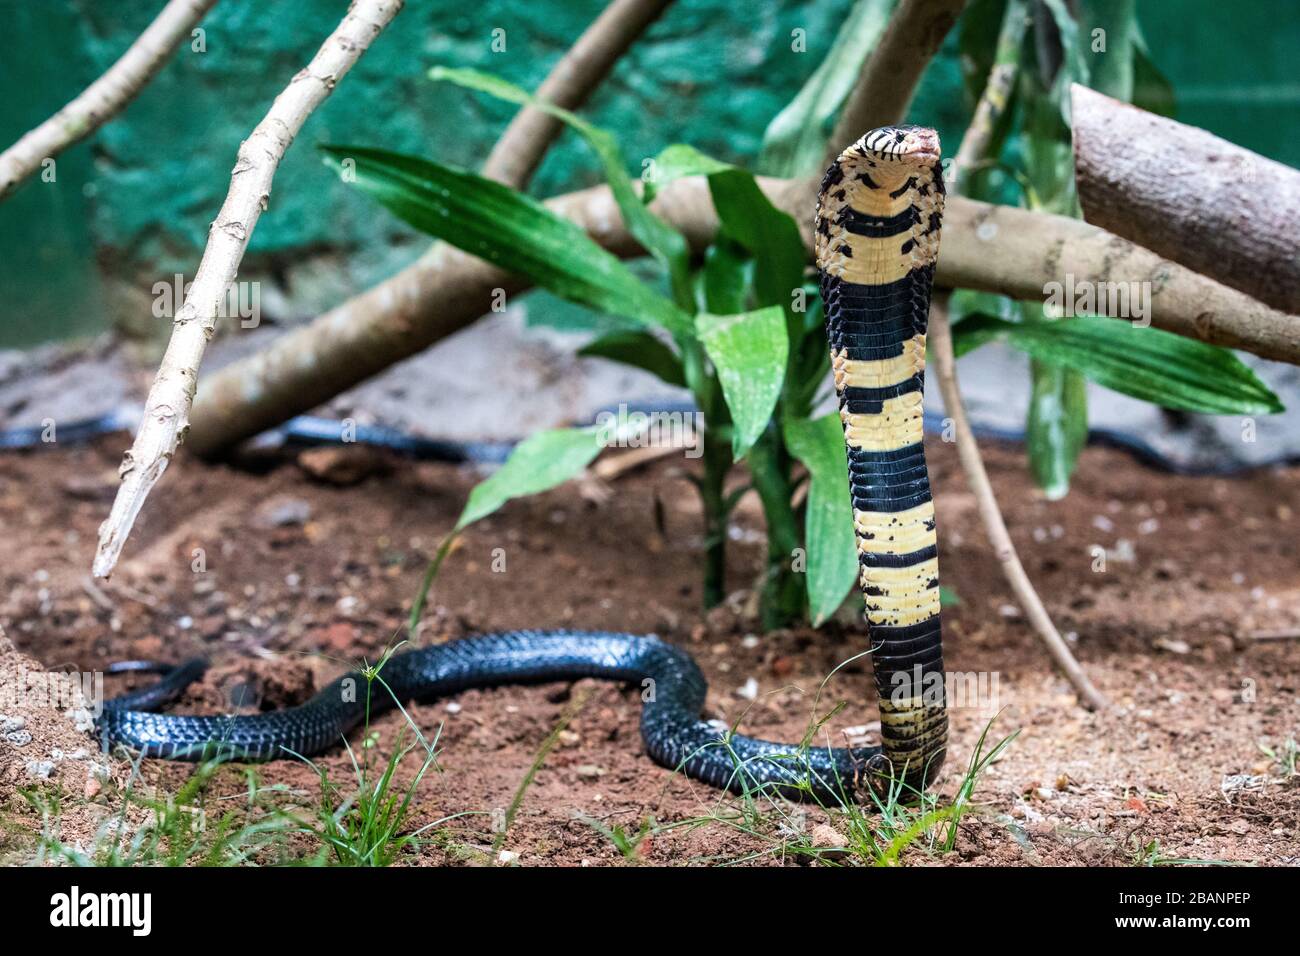 Forest cobra (Naja melanoleuca) at Uganda Reptiles Village, Entebbe, Uganda Stock Photo